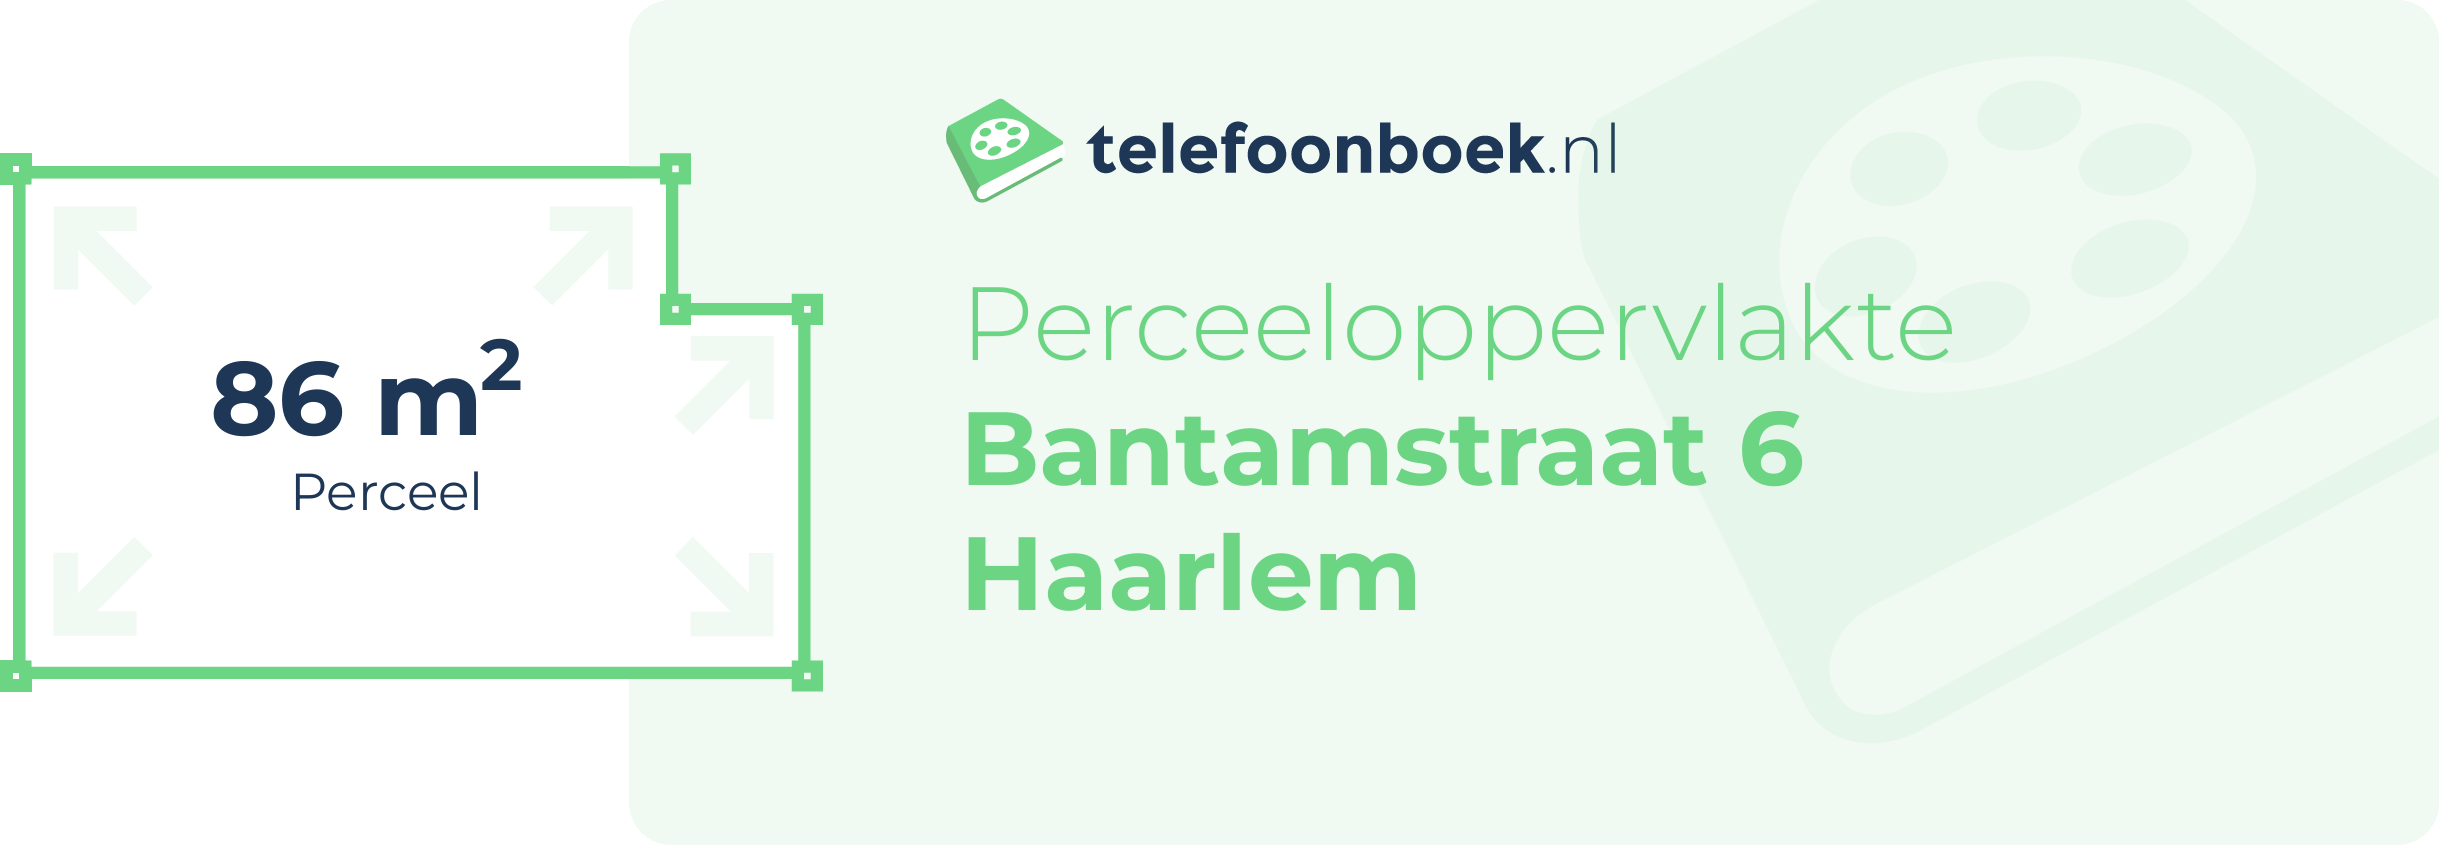 Perceeloppervlakte Bantamstraat 6 Haarlem